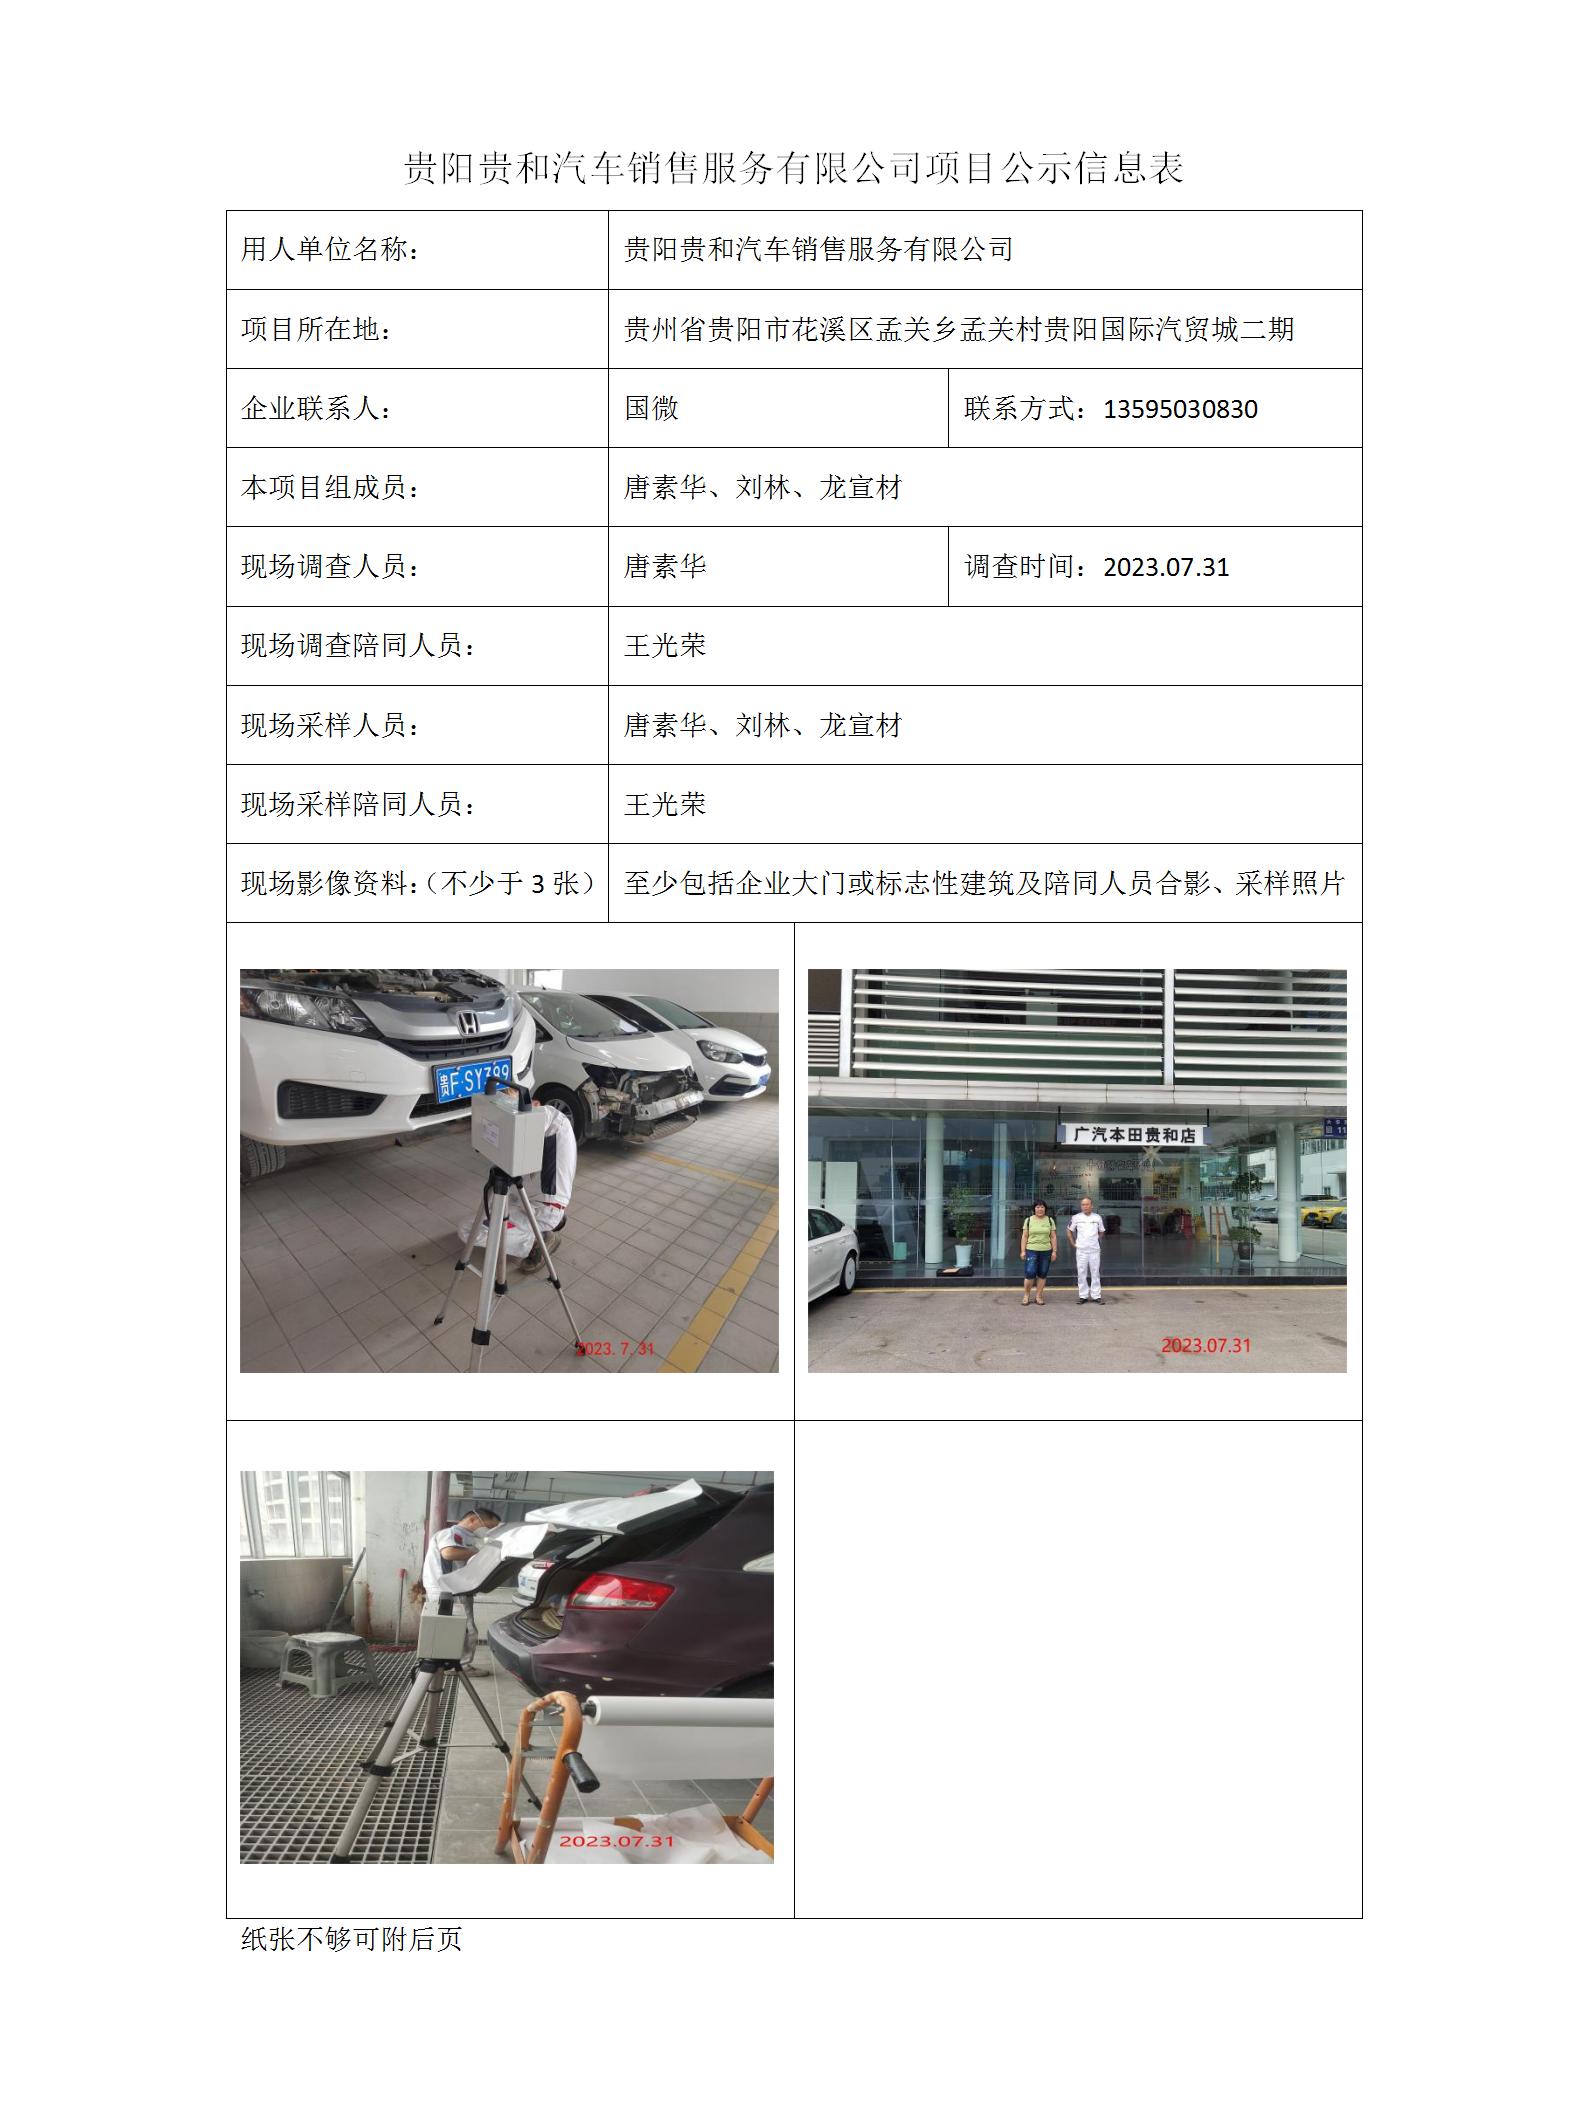 贵阳贵和汽车销售服务有限公司项目公示信息表_01.jpg